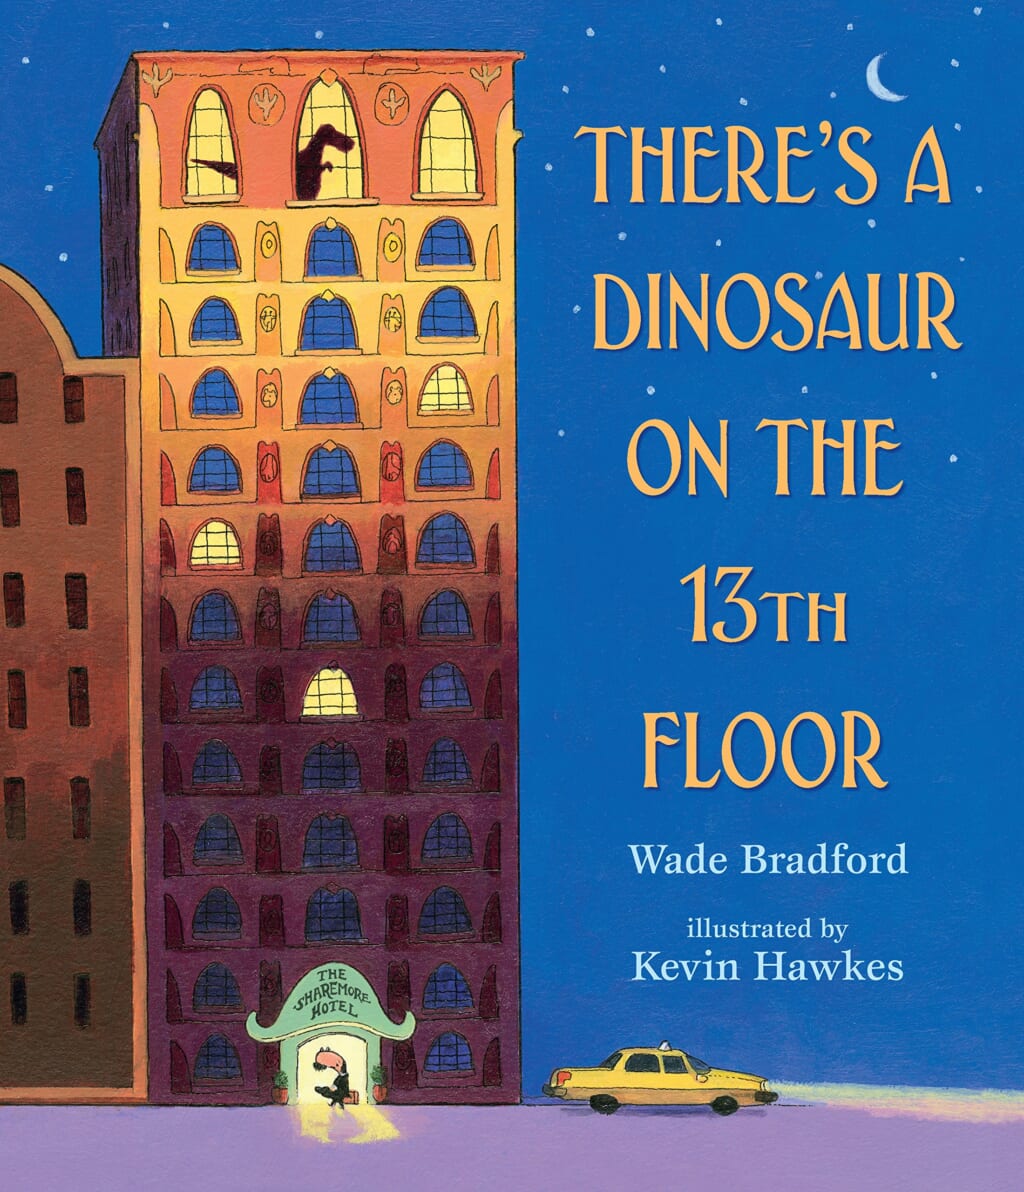 Best Dinosaur Books For Kids